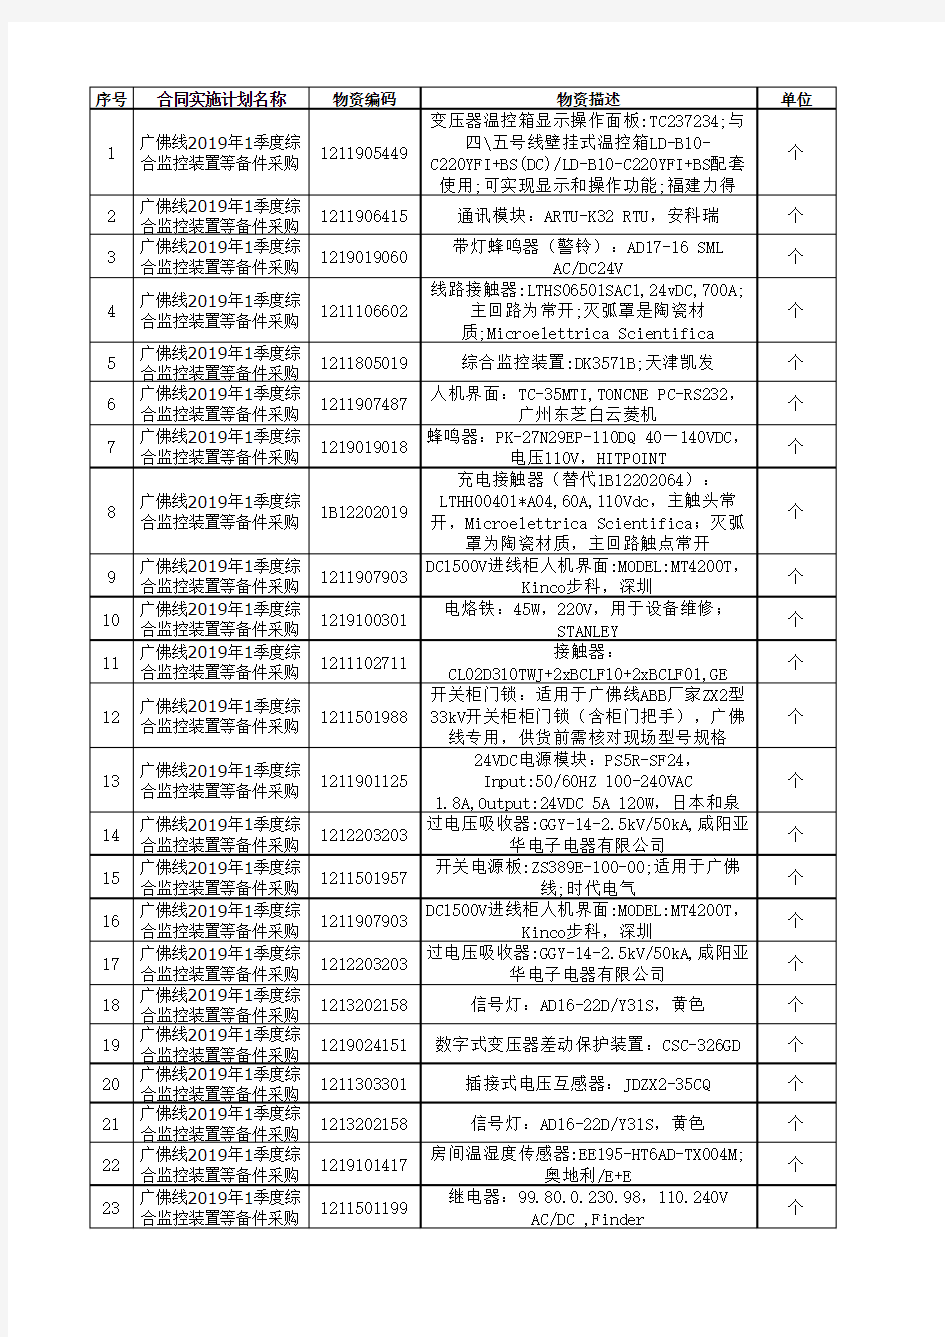 广州地铁集团有限公司广佛线2019年1季度综合监控装置等备件采购货物清单